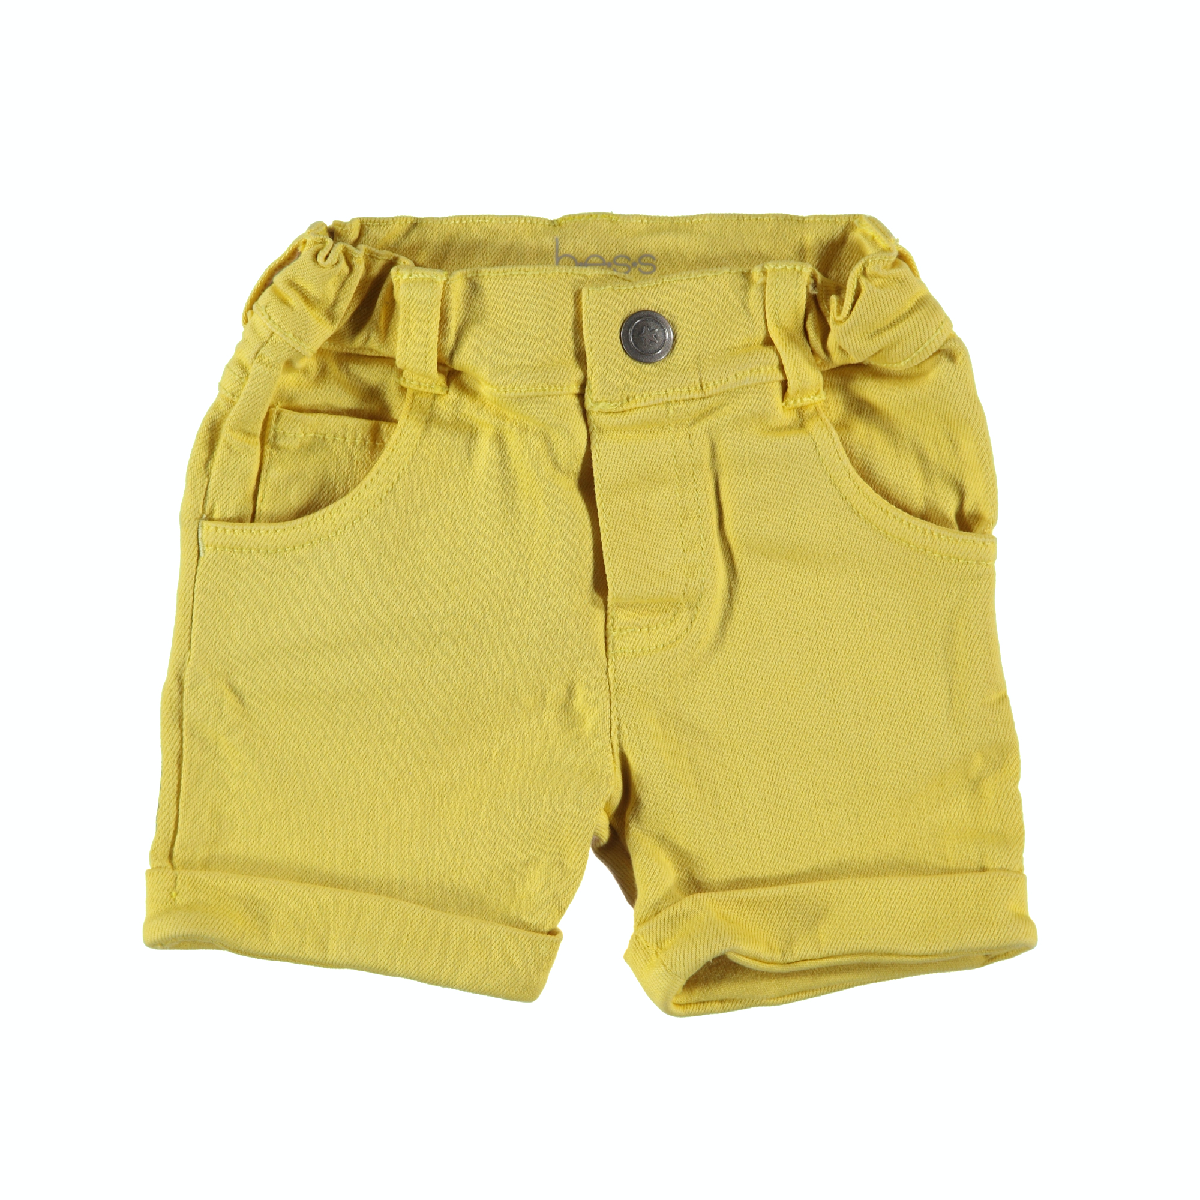 Jongens Shorts Denim van B.E.S.S. in de kleur Yellow in maat 68.